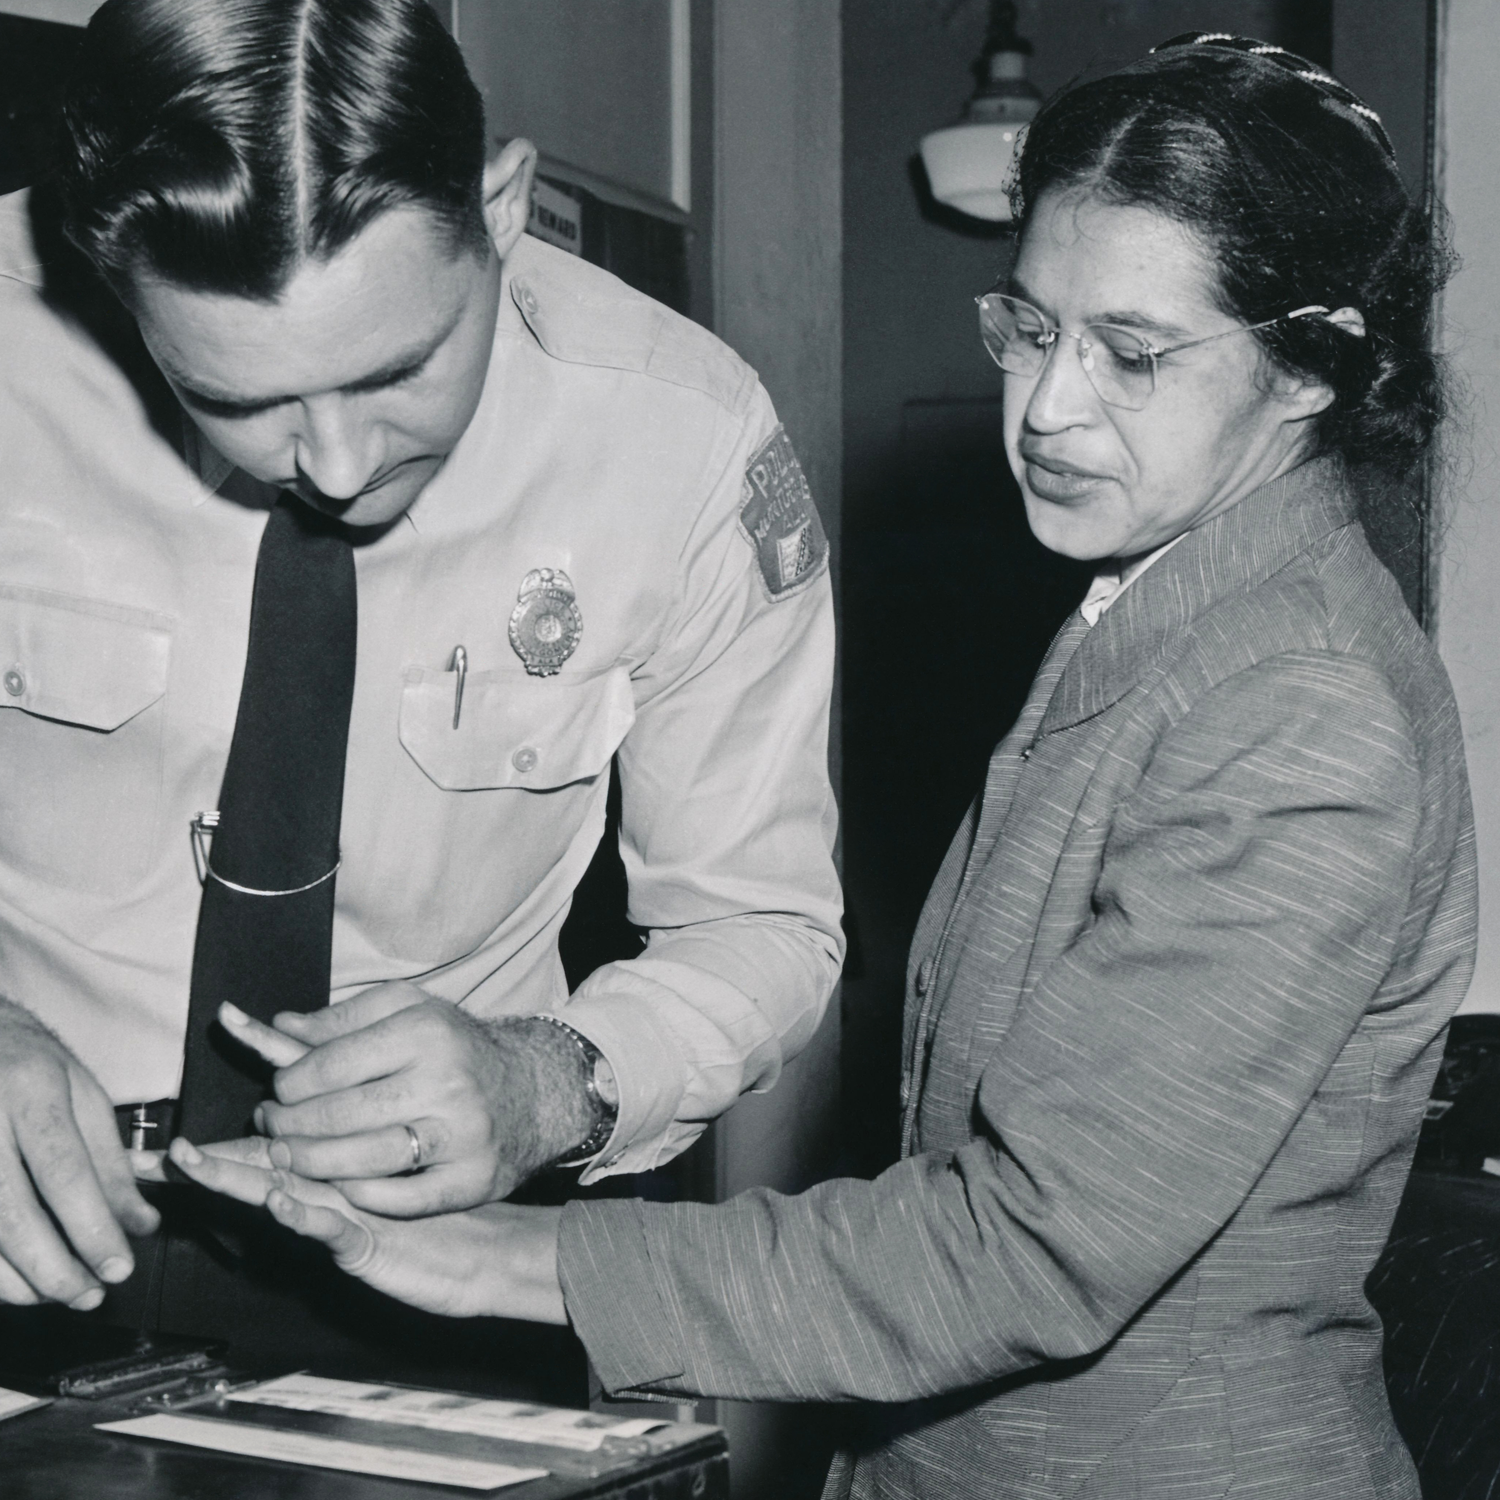 Rosa Parks being fingerprinted